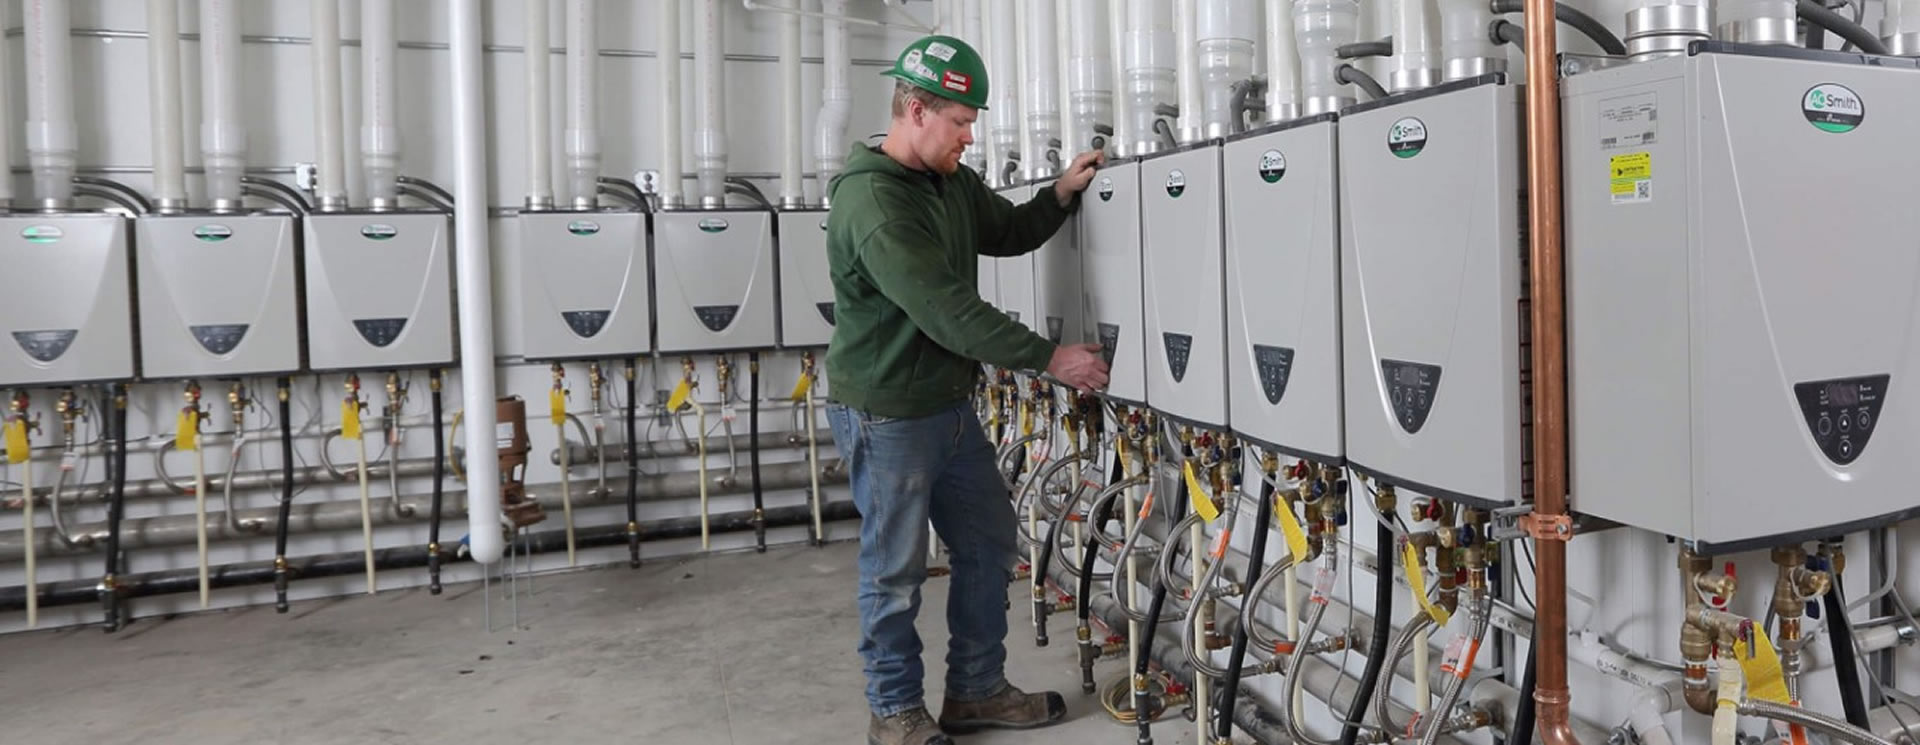 Water Heater Repair in La Crescenta-Montrose, CA